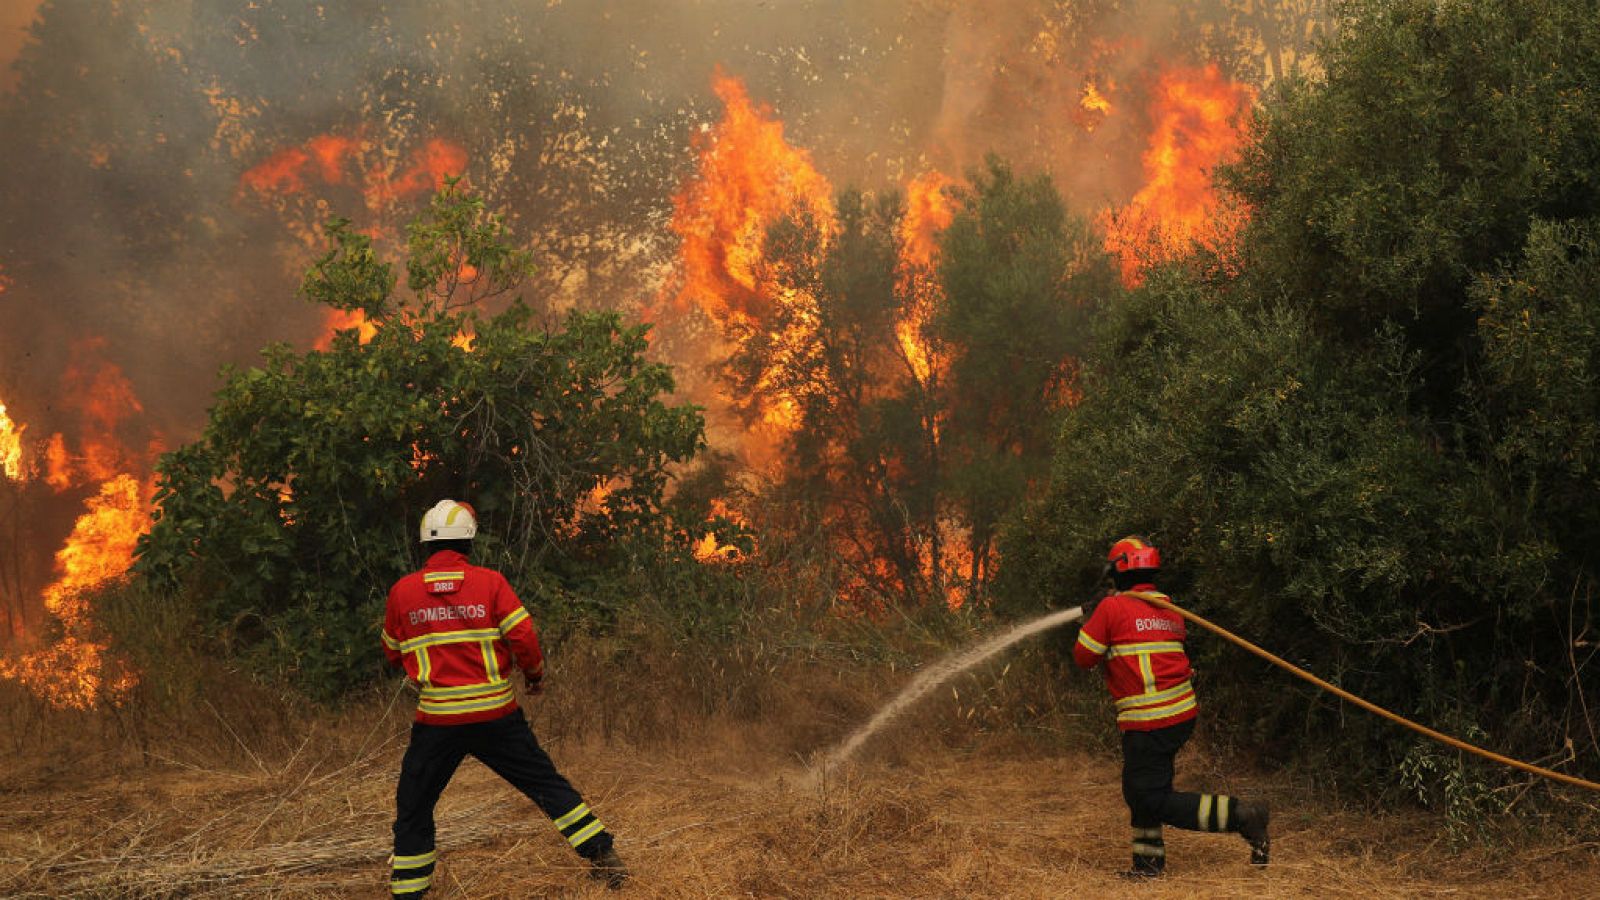 Boletines RNE - WWF advierte sobre el aumento y peligrosidad de los incendios forestales - Escuchar ahora 